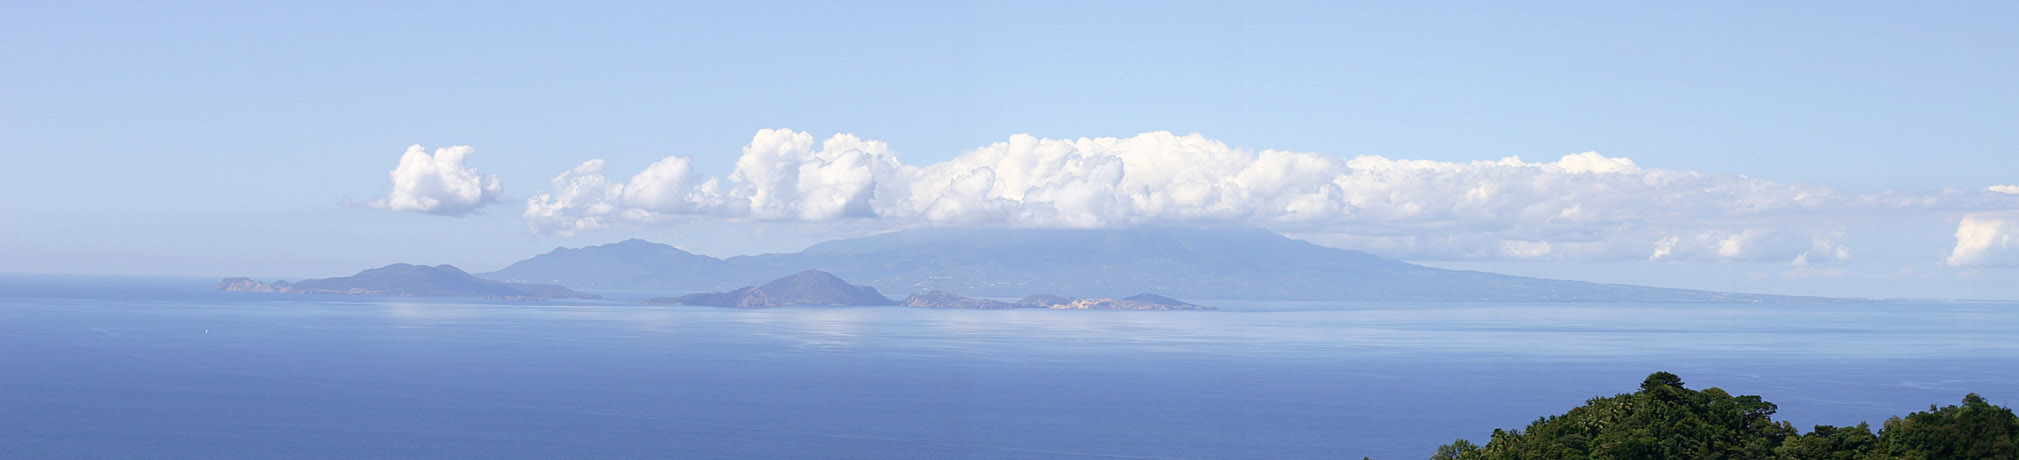 Вид на остров Гваделупа с острова Доминика